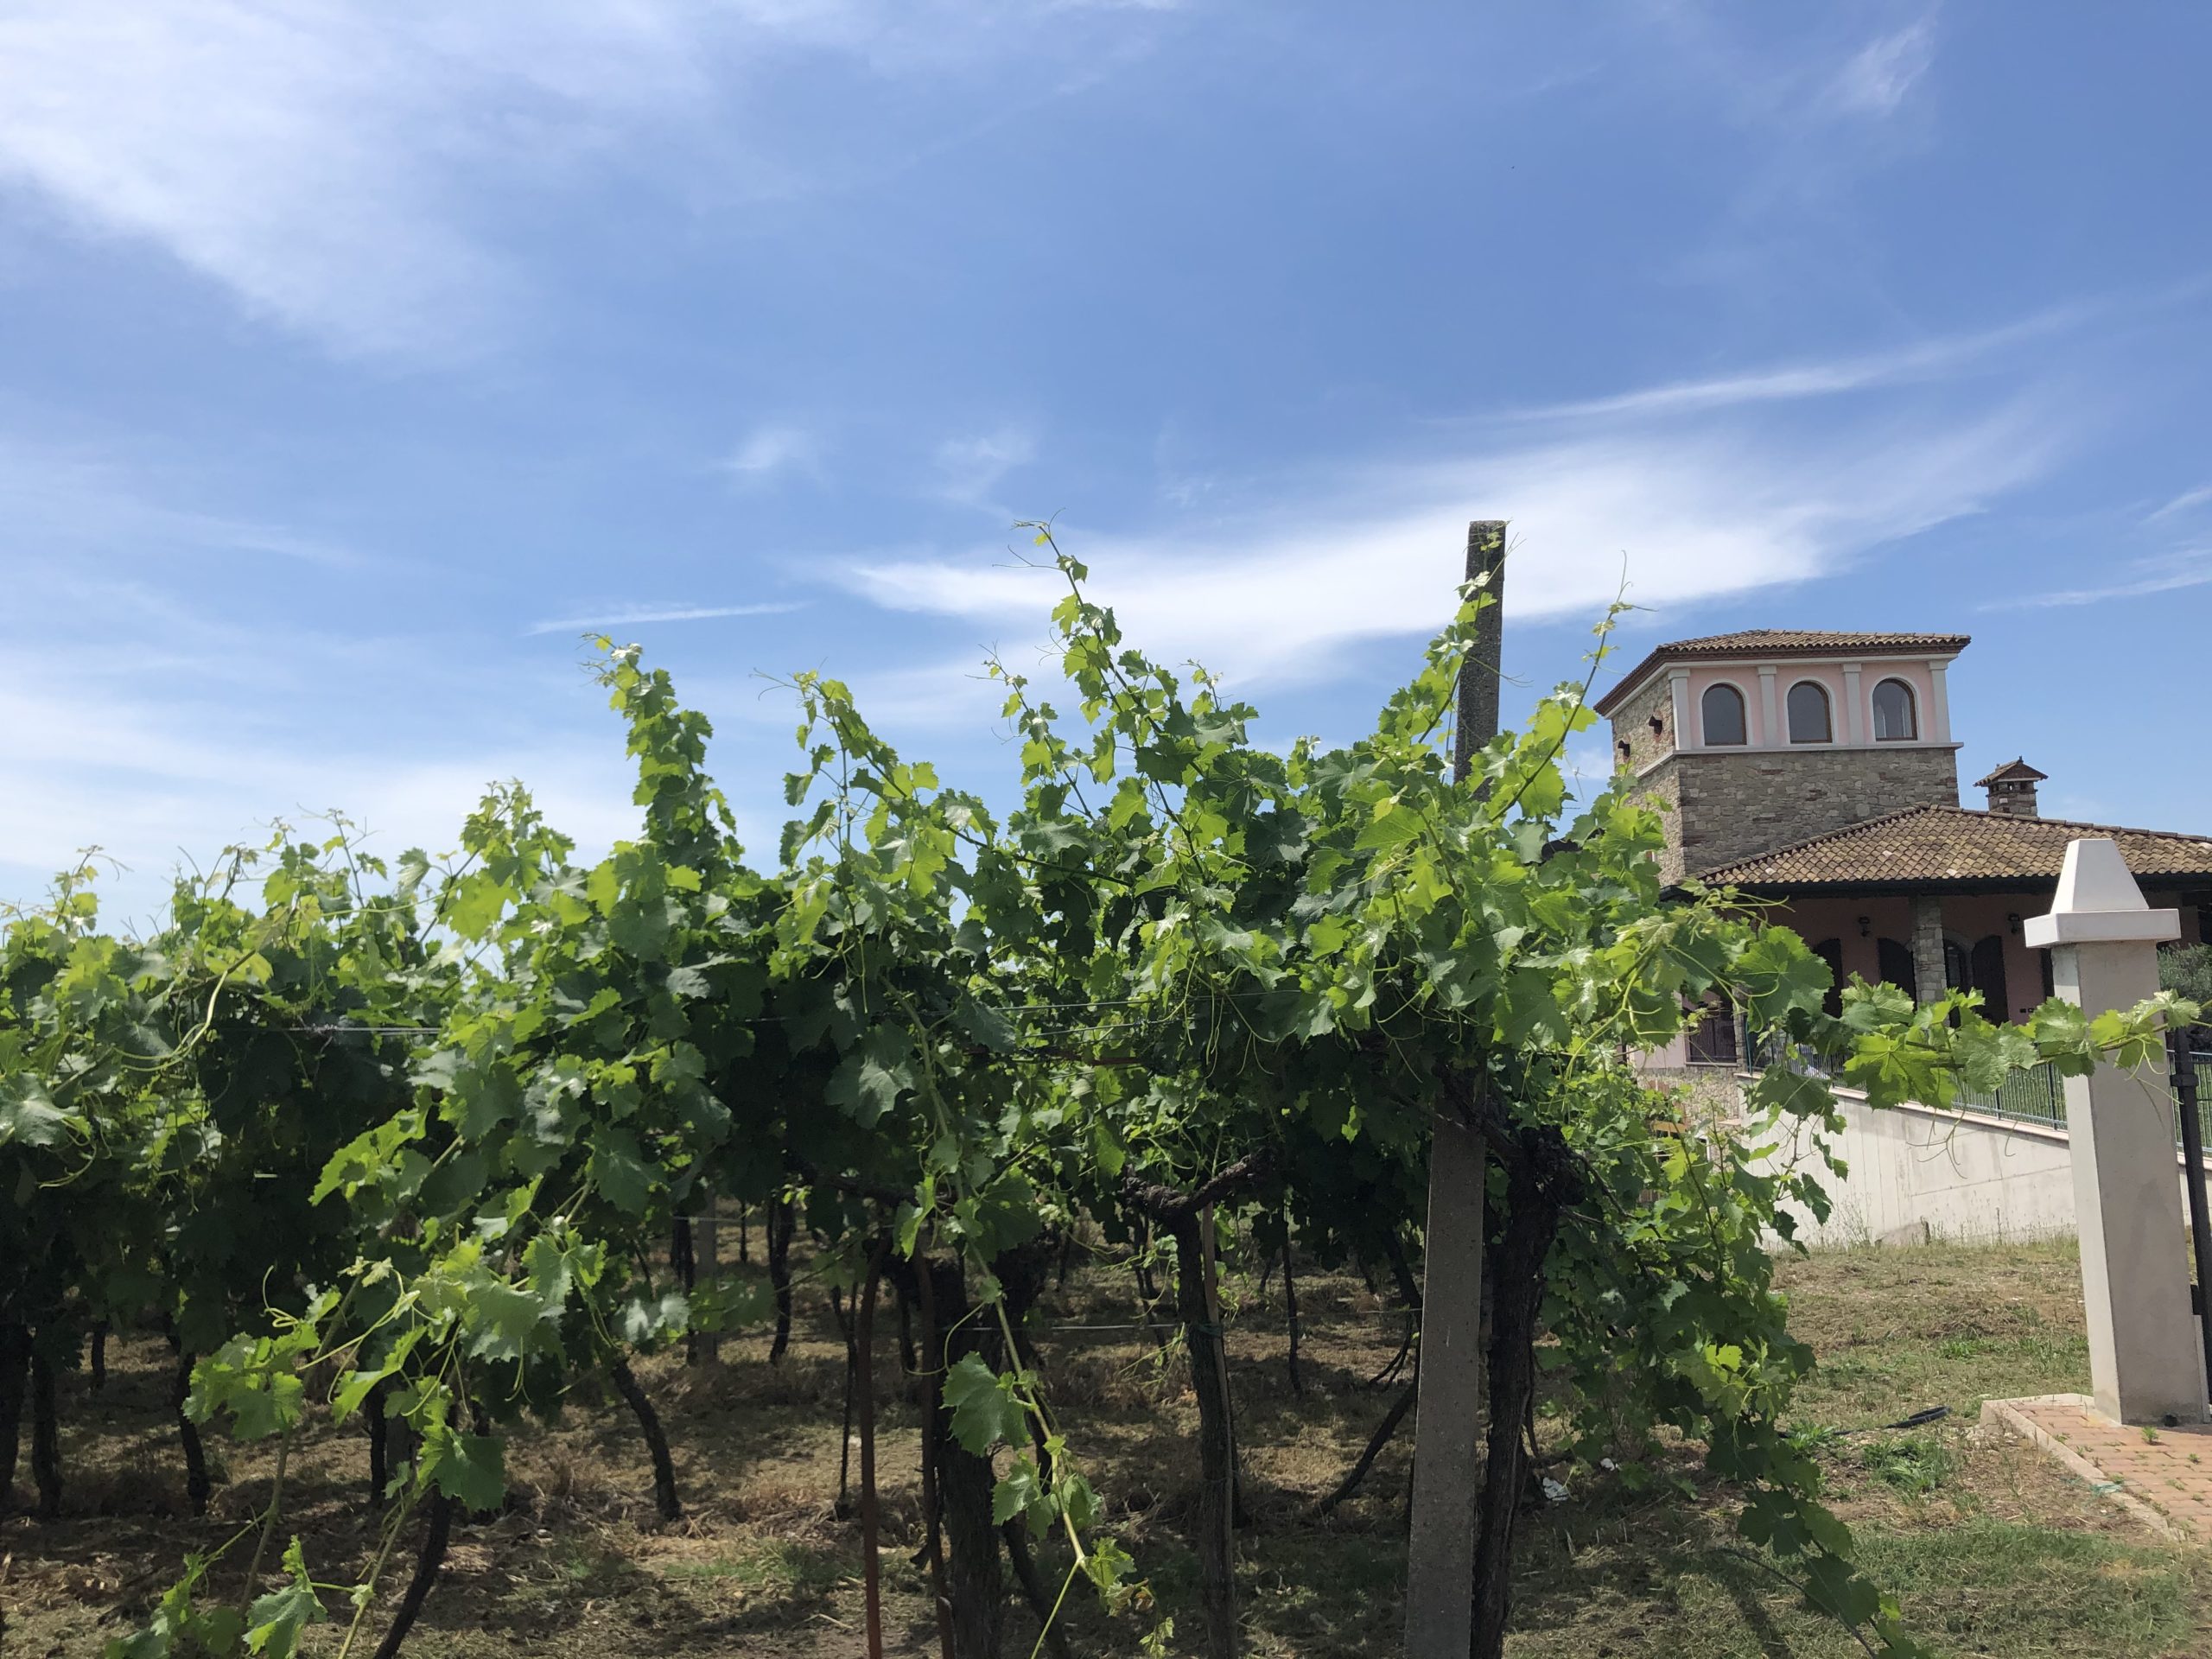 Weinregion Venezien – alles Lugana oder was?